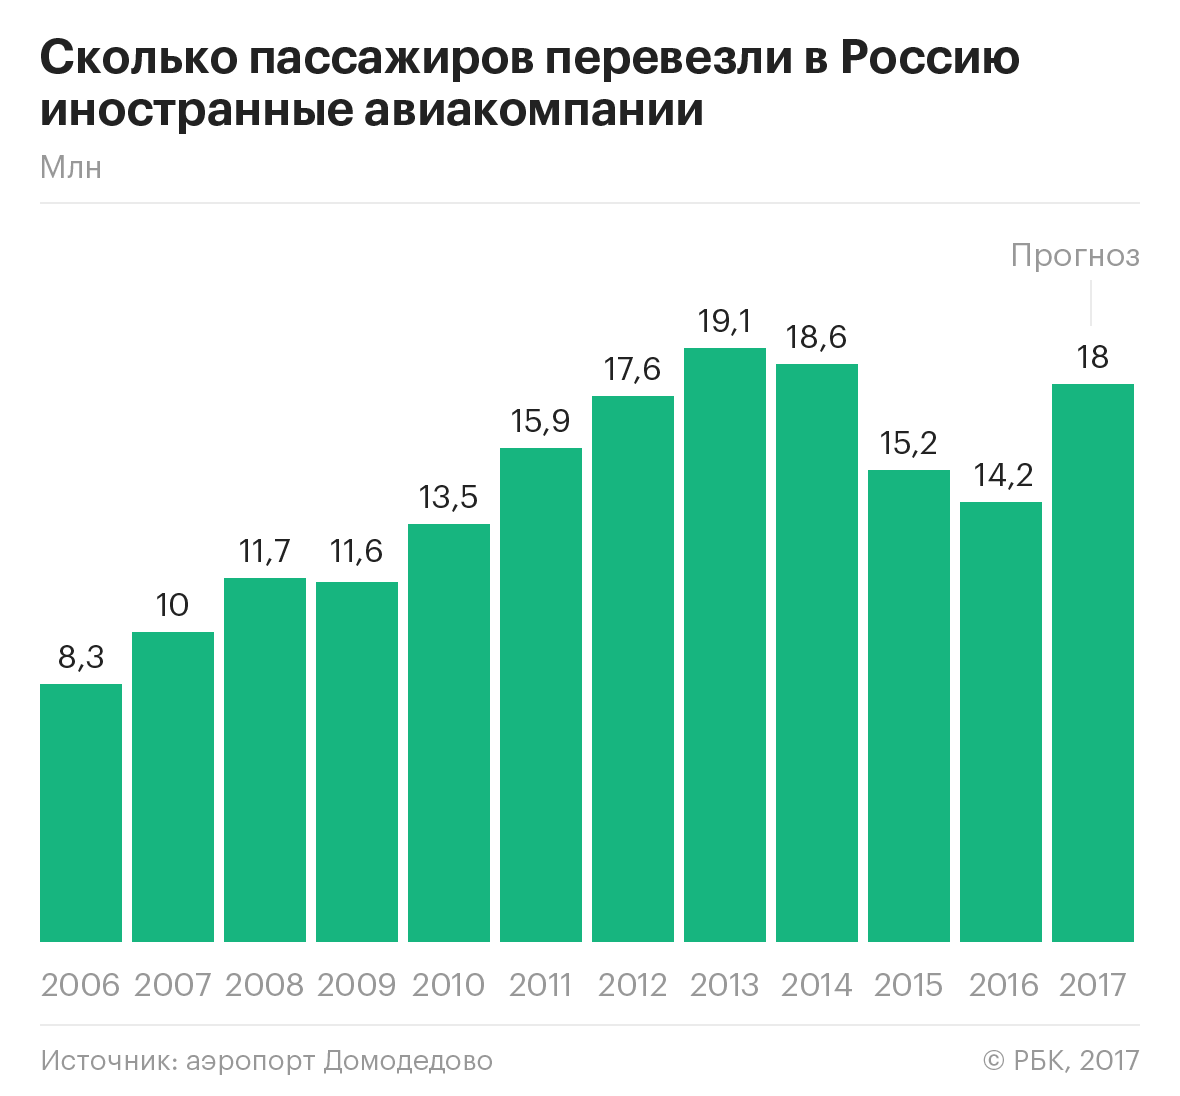 Иностранные авиакомпании впервые с 2013 года увеличили перевозки в Россию